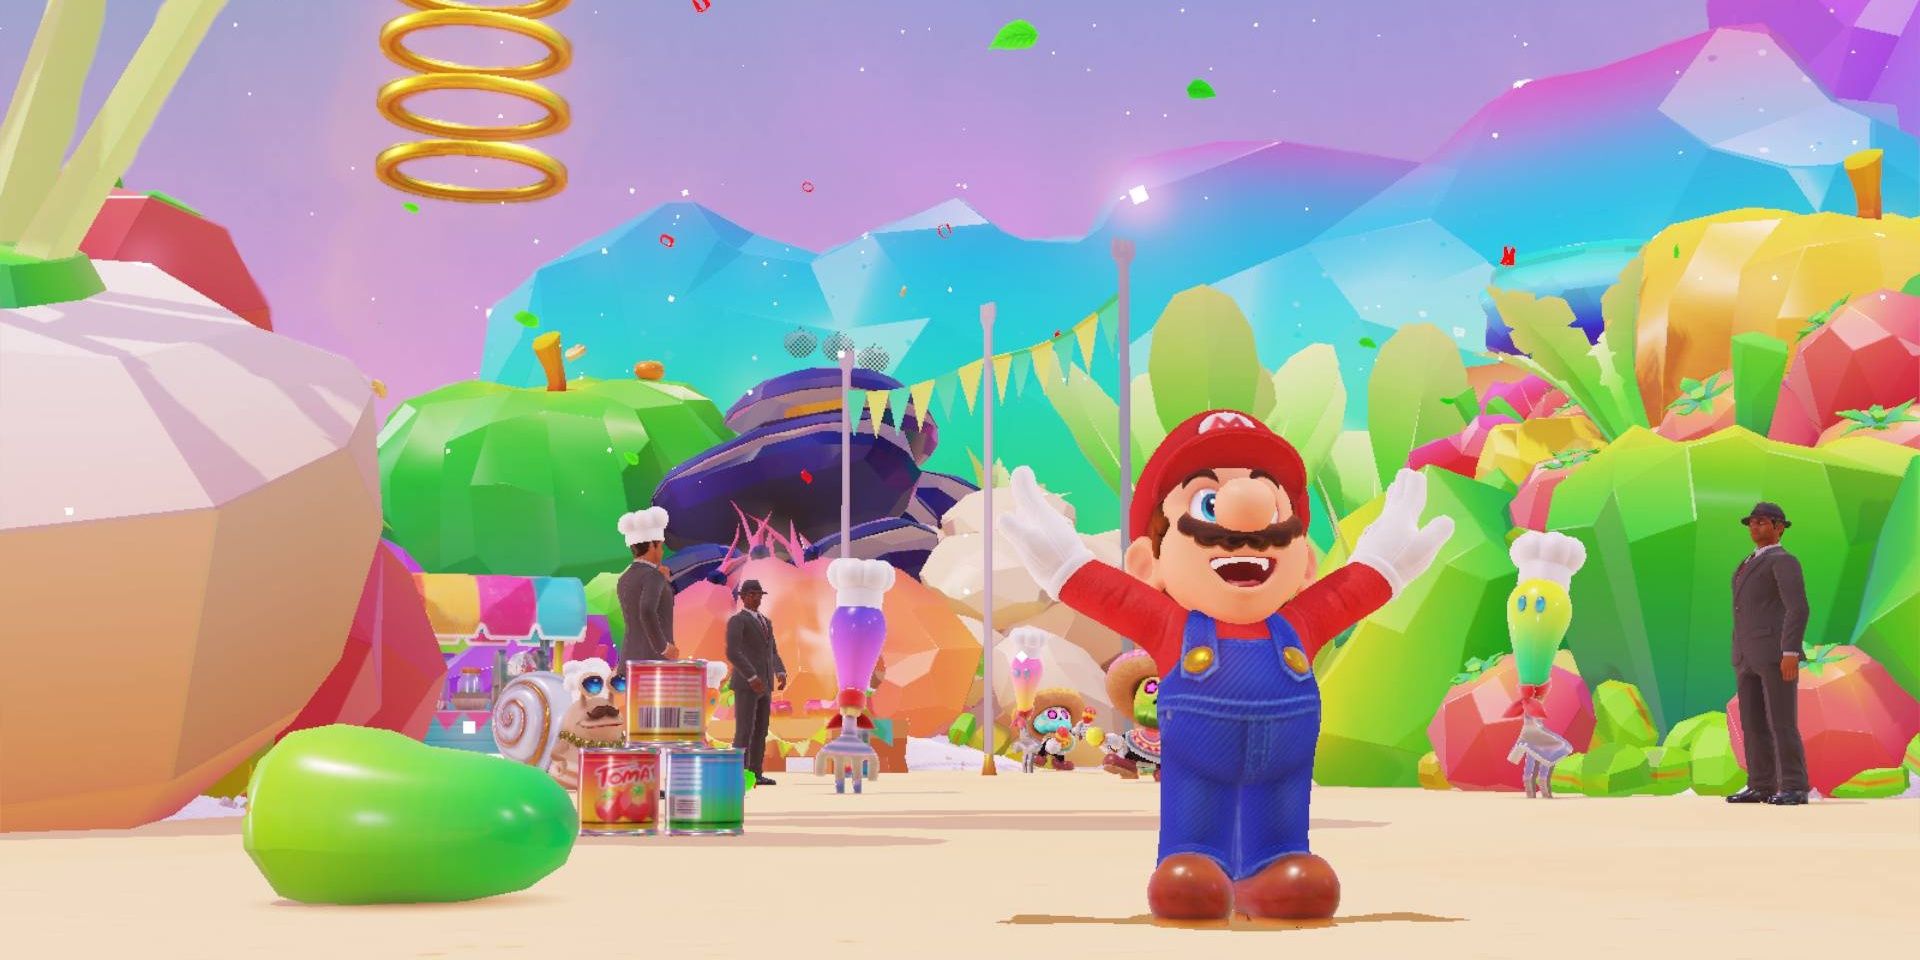 Mario effectuant un saut lors de la célébration au Royaume des Plats dans Super Mario Odyssey